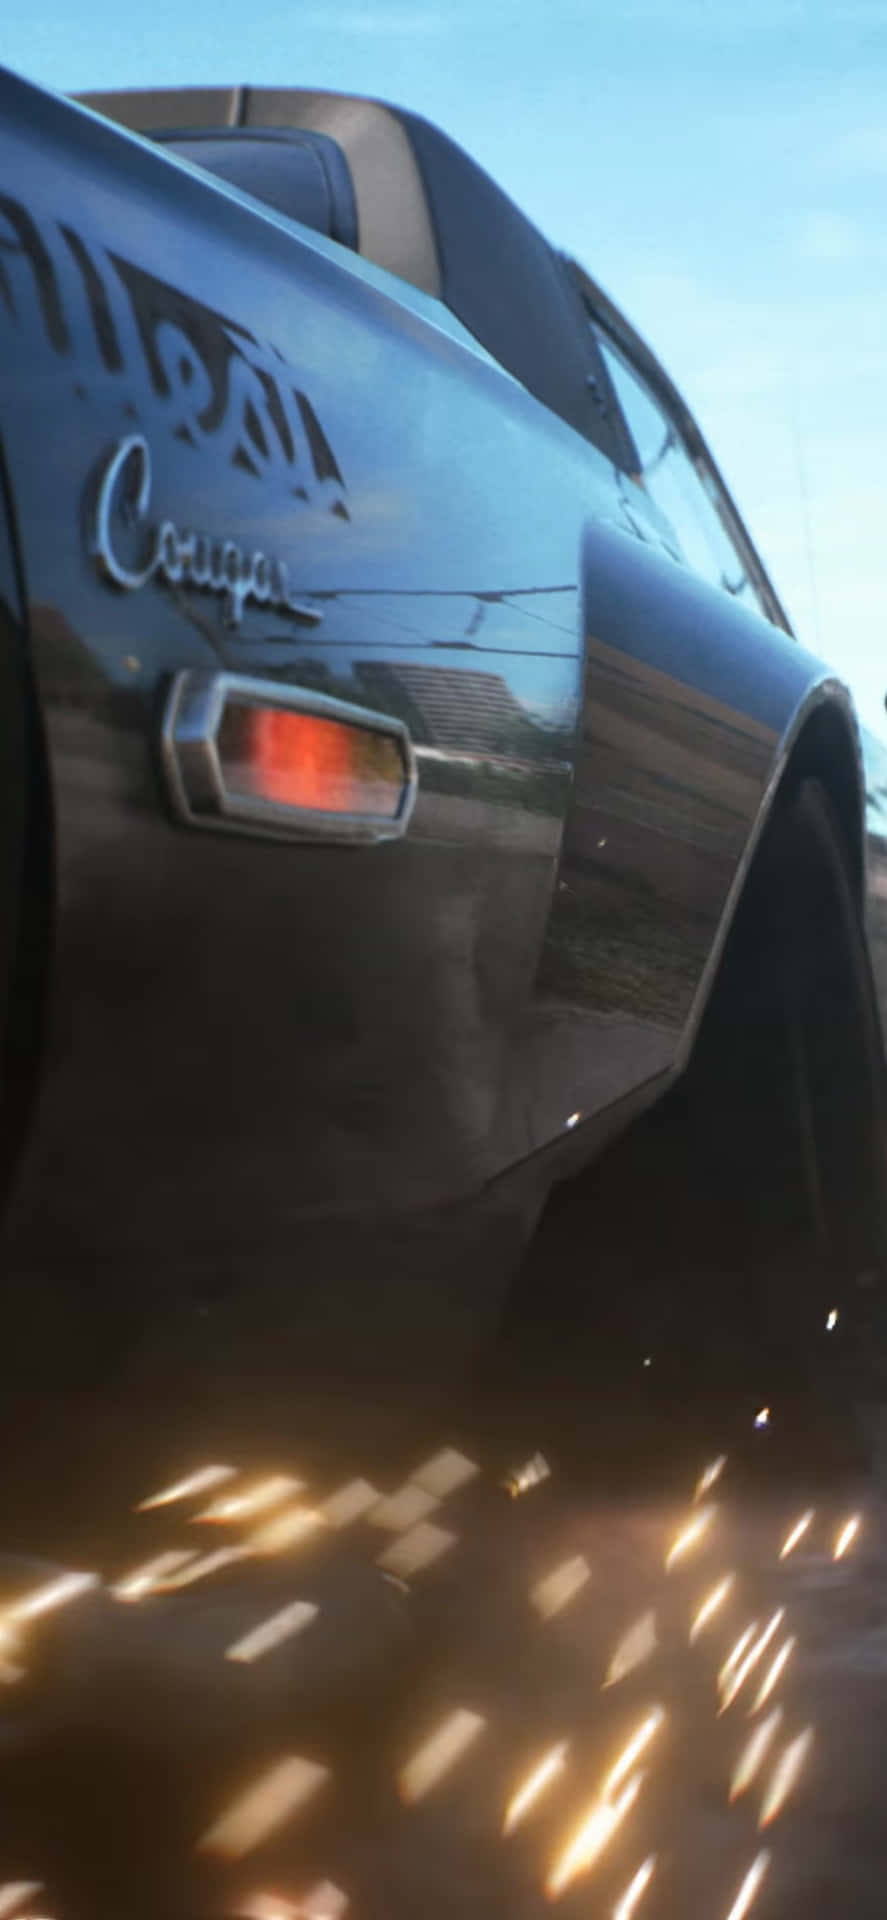 Iphonexs Bakgrundsbild För Need For Speed Payback Med En Grå Dodge Challenger.